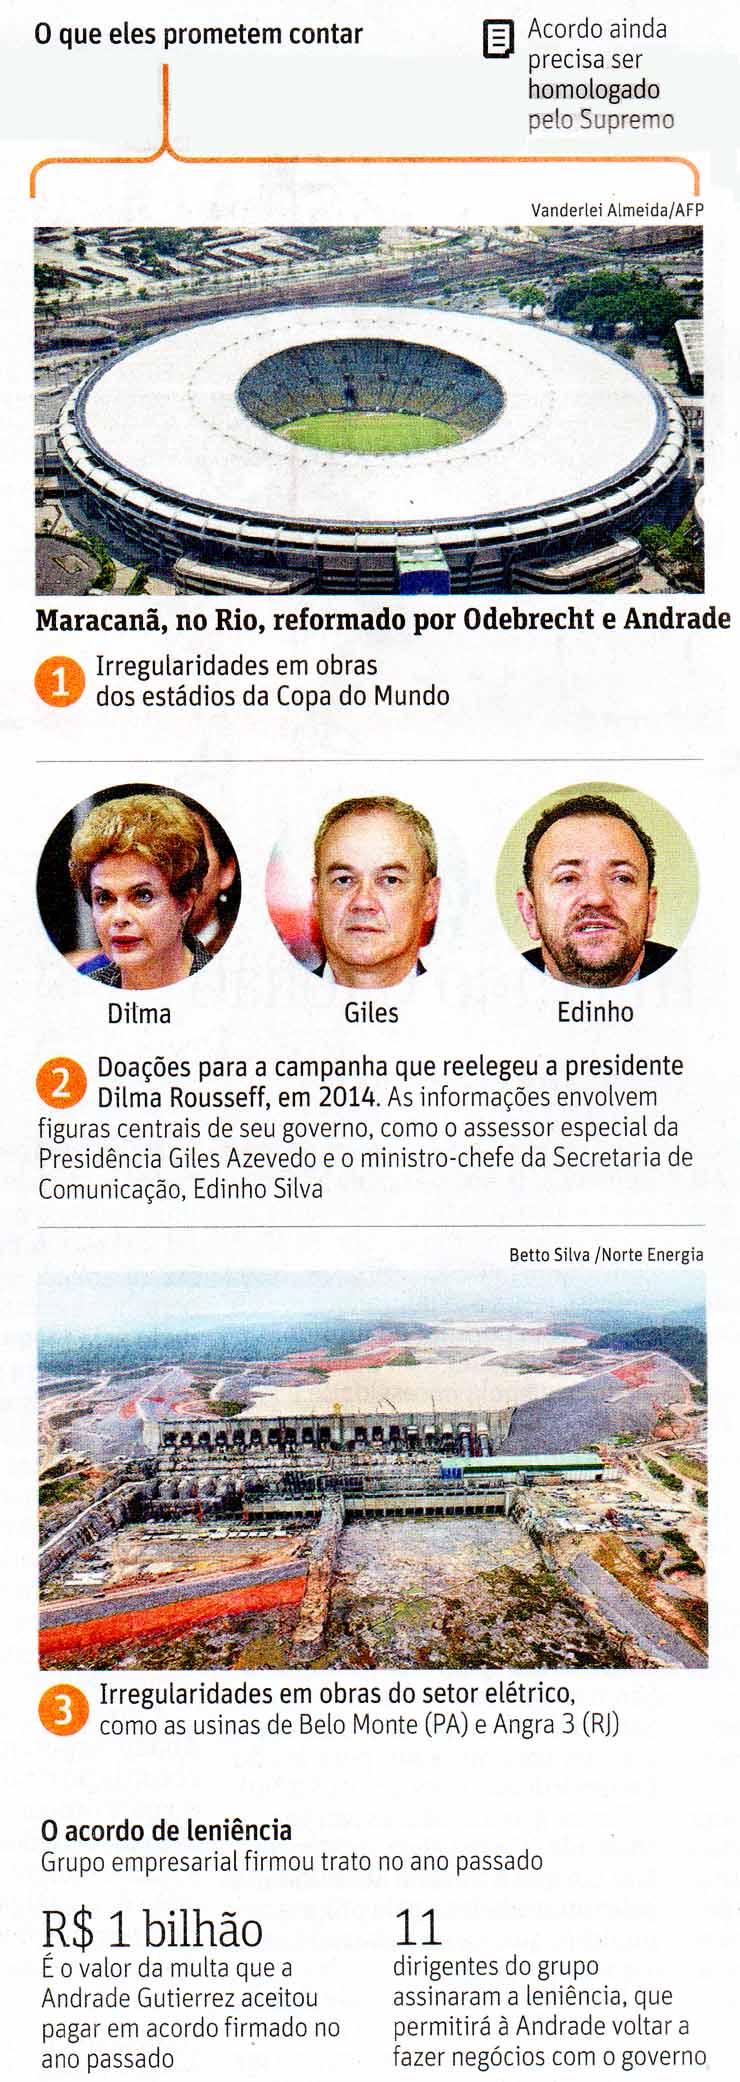 Folha de So Paulo - 06/02/16 - Andrade Gutierrez: Novos Acordos